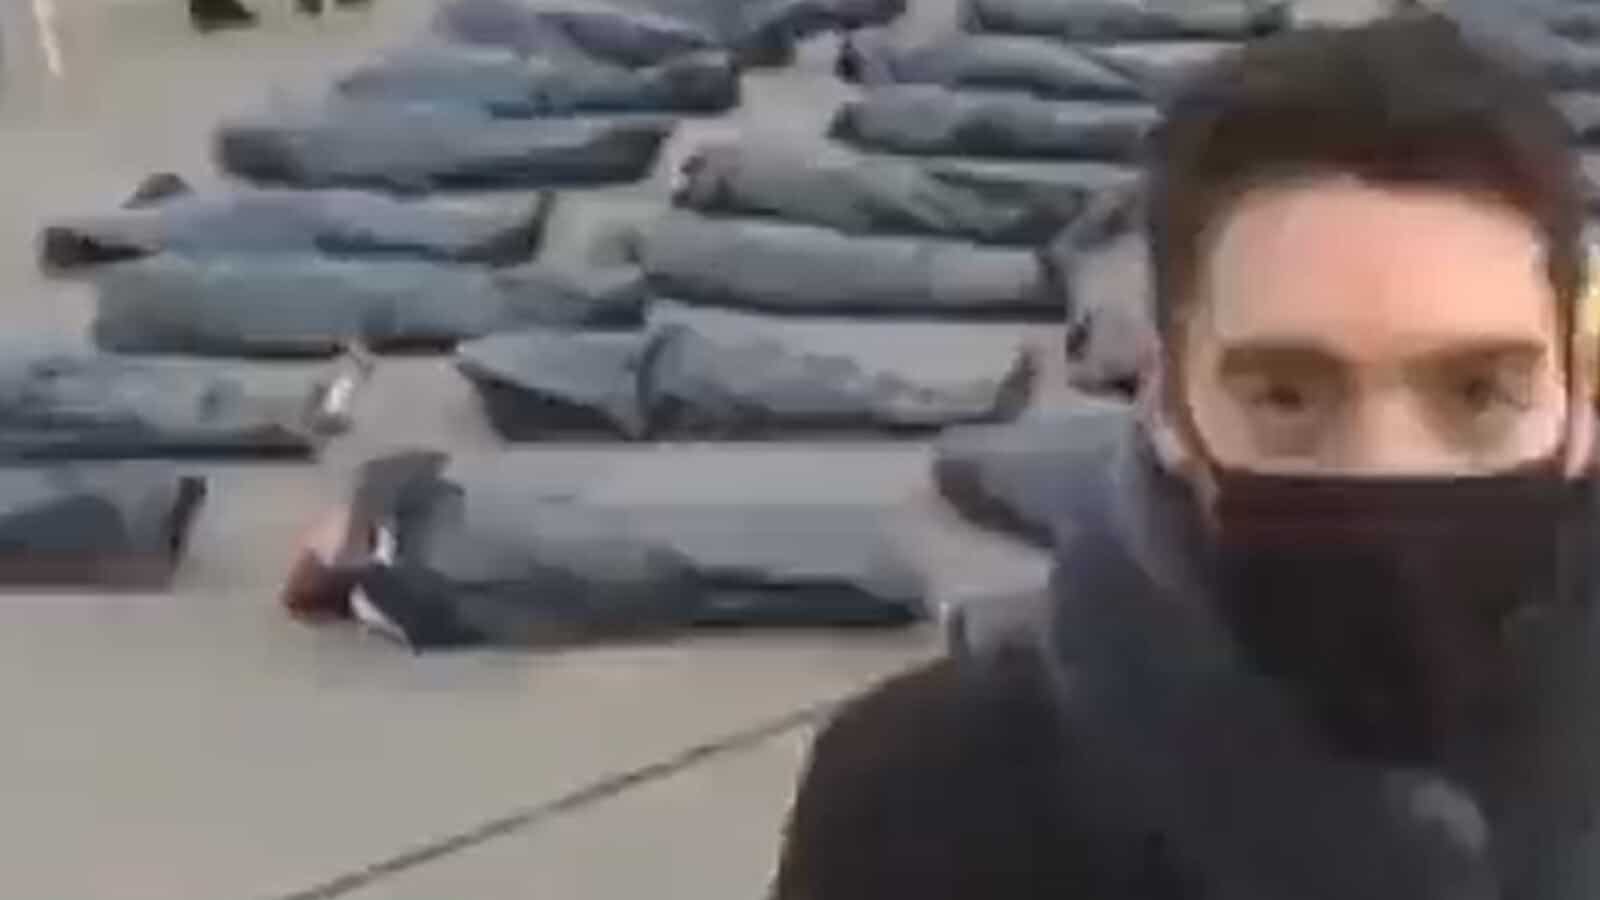 Leichensäcke bewegen sich? Kein Medienfake, Video zeigt nicht die Ukraine.